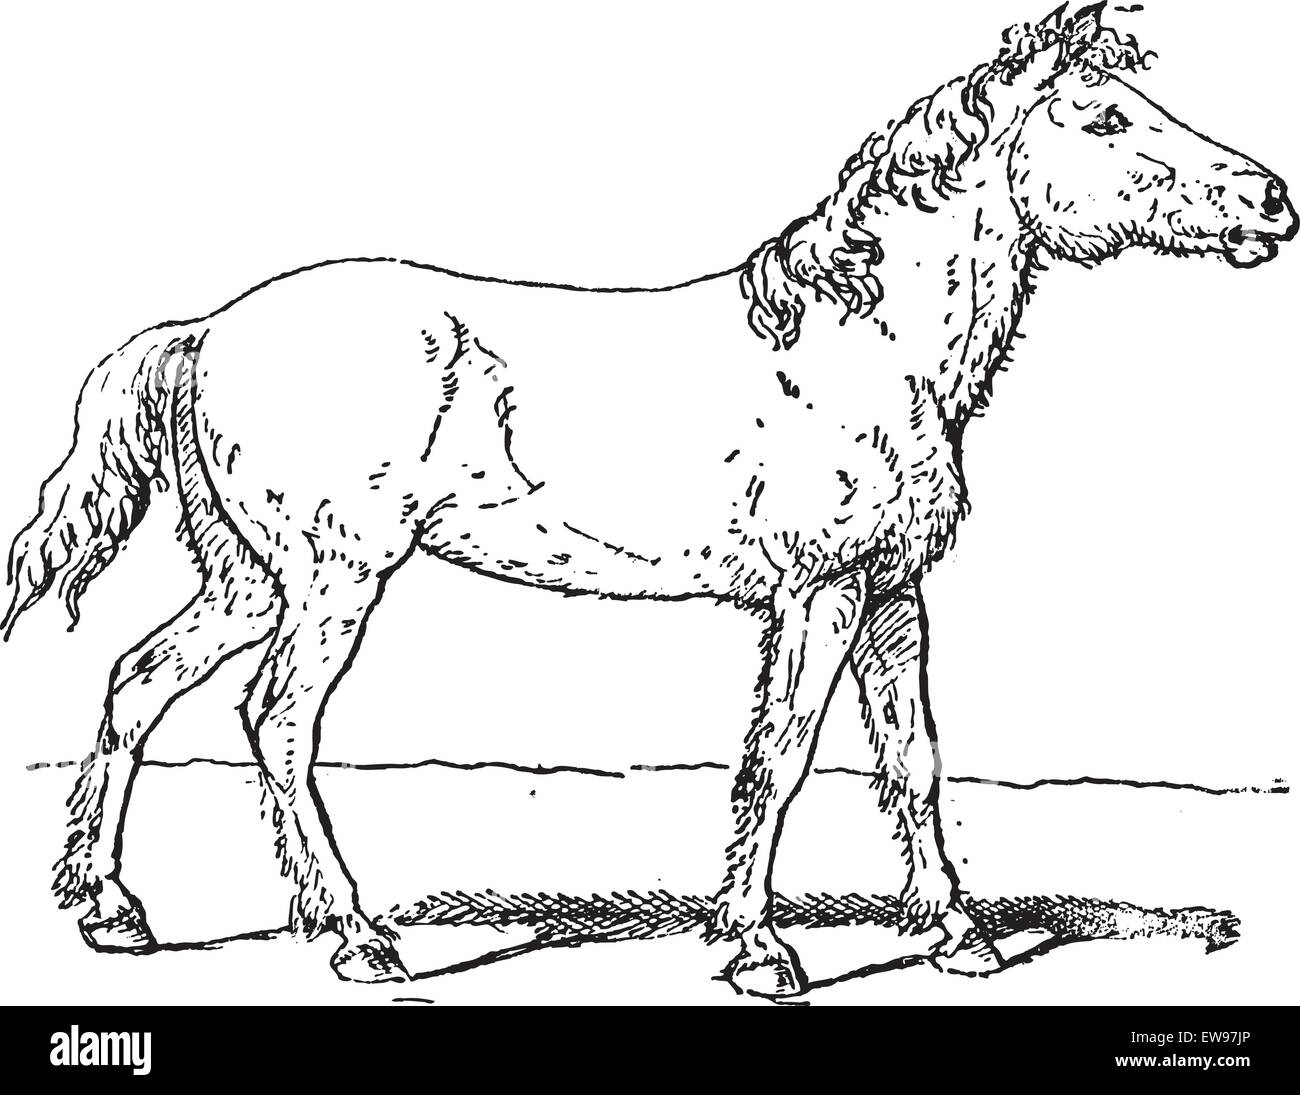 Vieille illustration gravée de Tarpan ou Equus ferus ferus ou cheval sauvage eurasien ou Equus equus gmelini ou silvaticus. L' Illustration de Vecteur